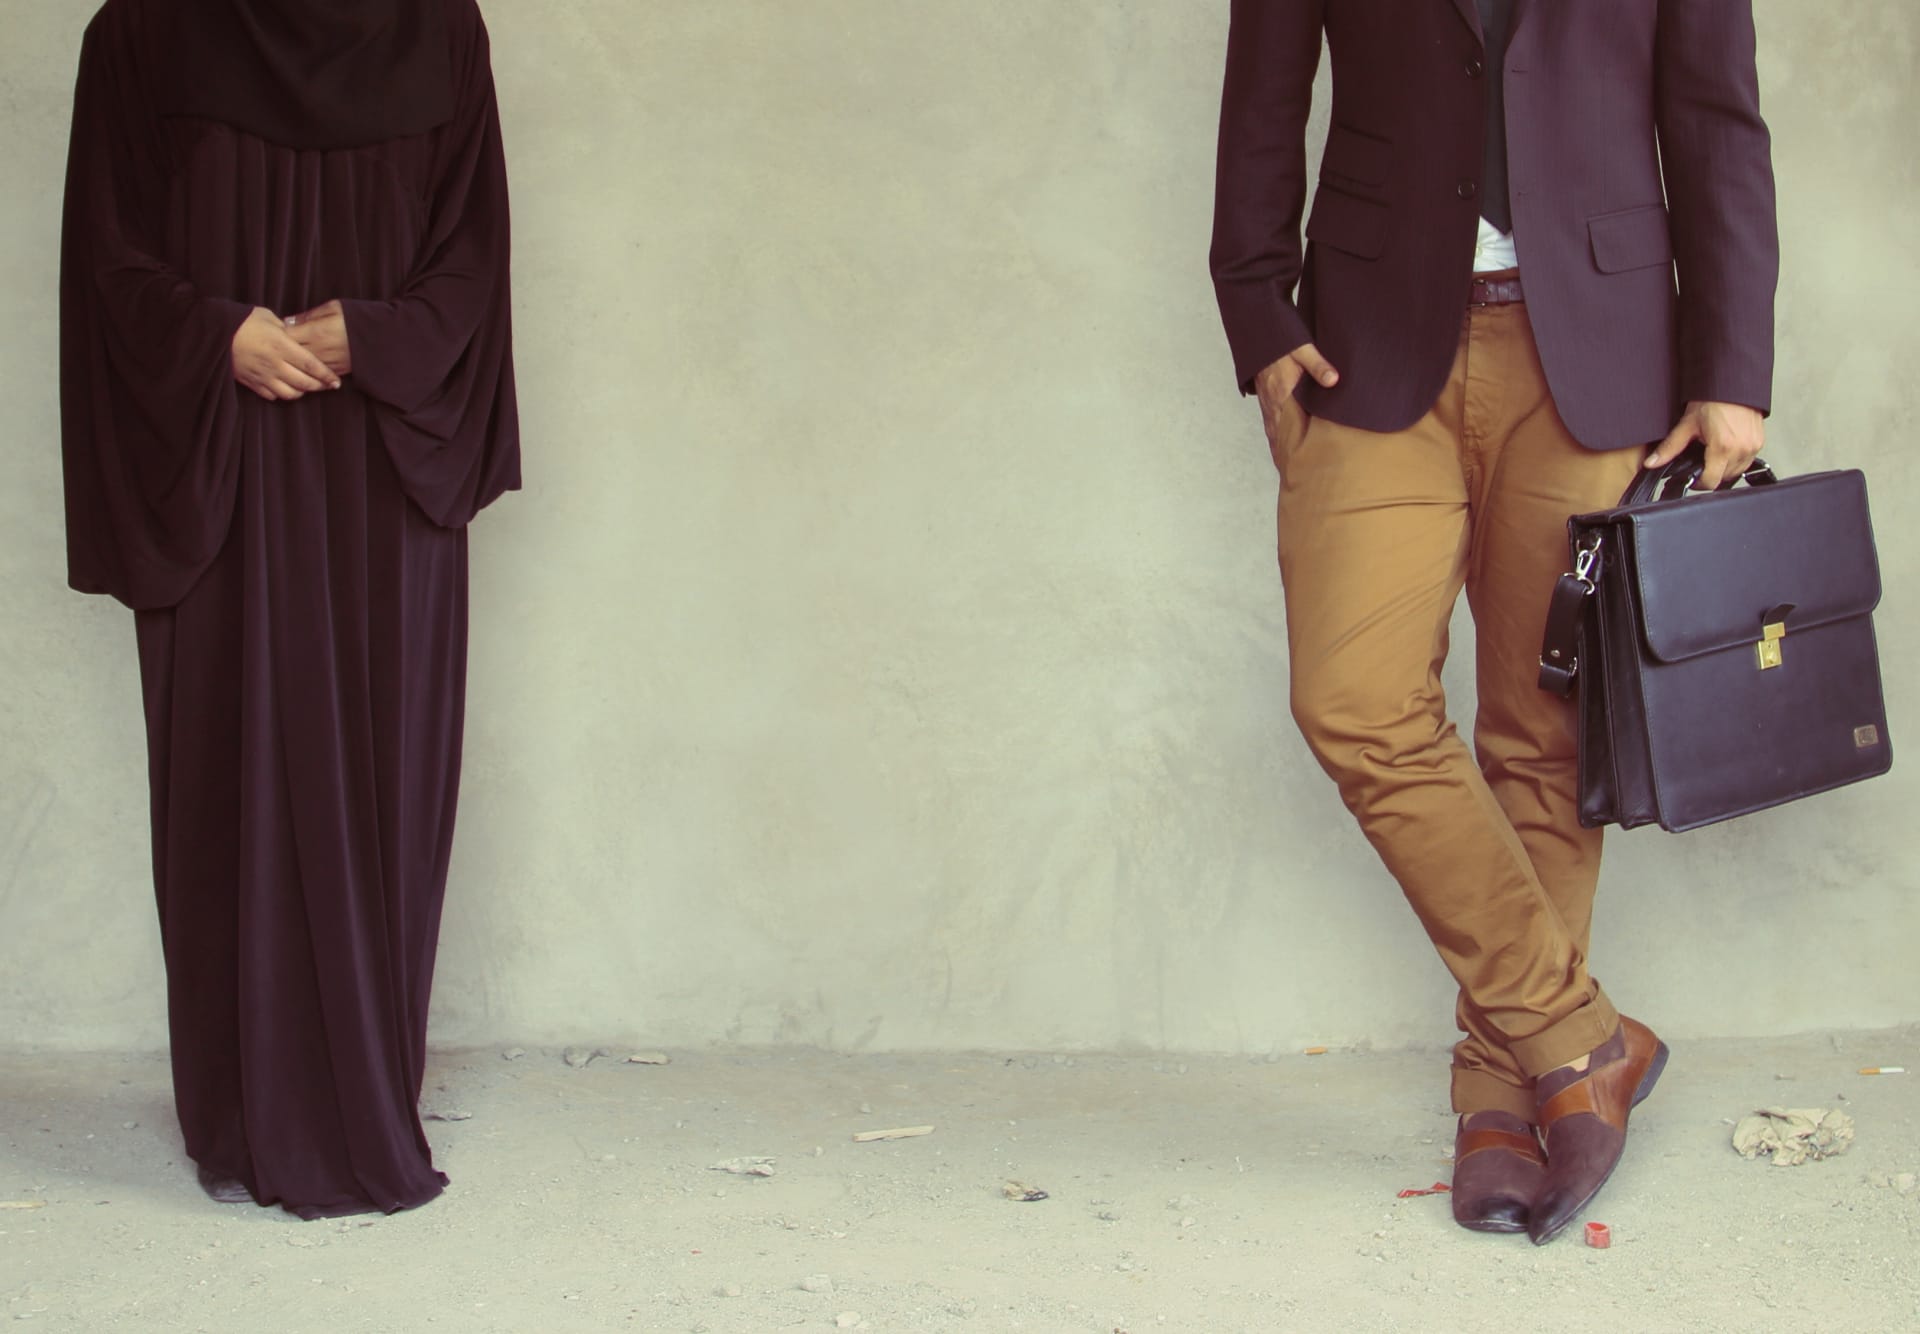 كيف تغير الرجال مقارنة بالمرأة اليمنية في 2013 في عمل "وطني حبيبي"؟